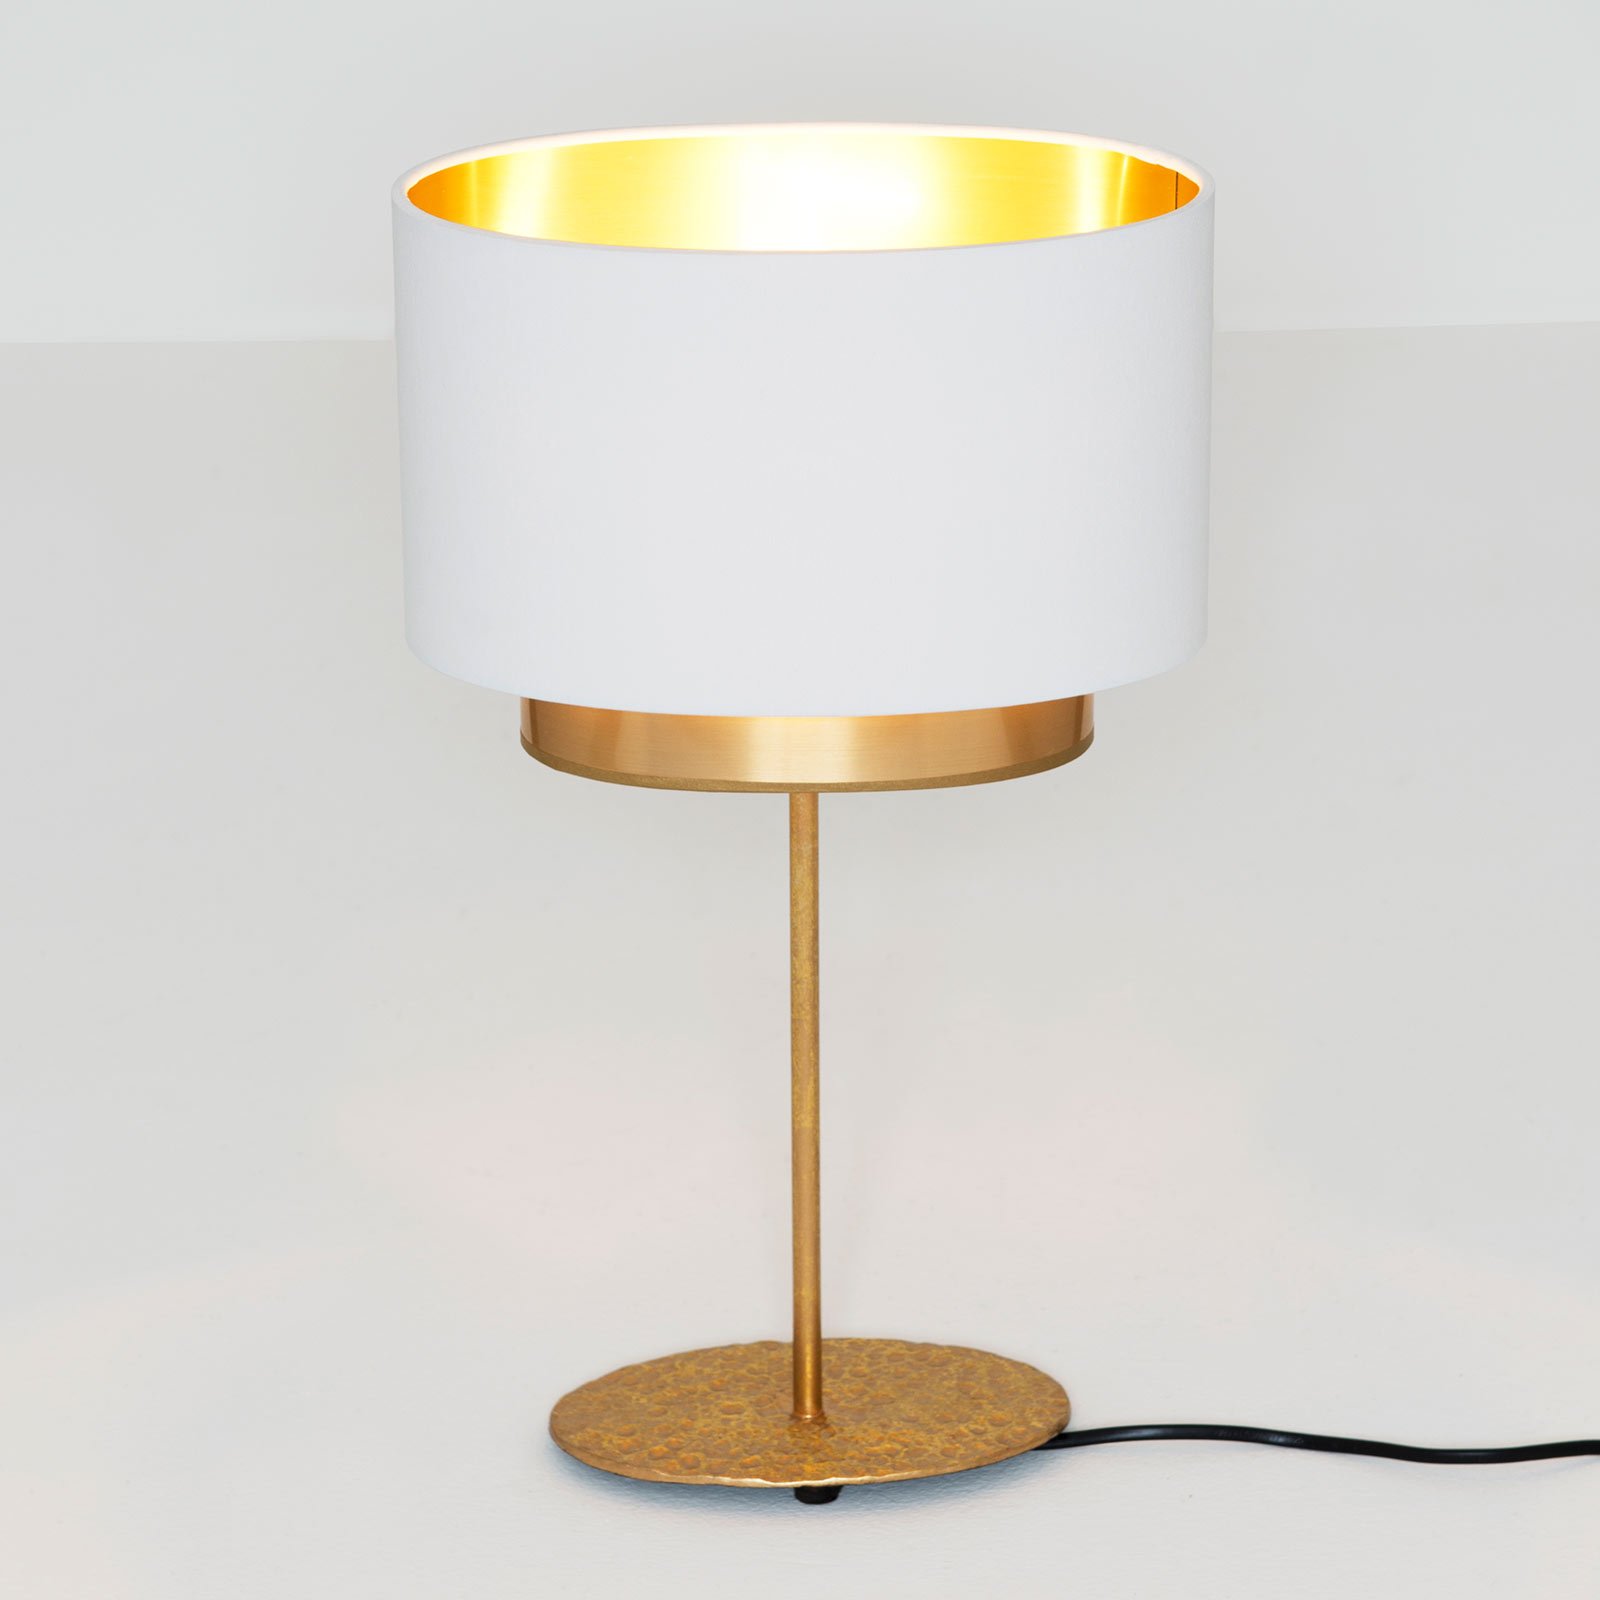 Tafellamp Mattia, ovaal, dubbel, wit/goud